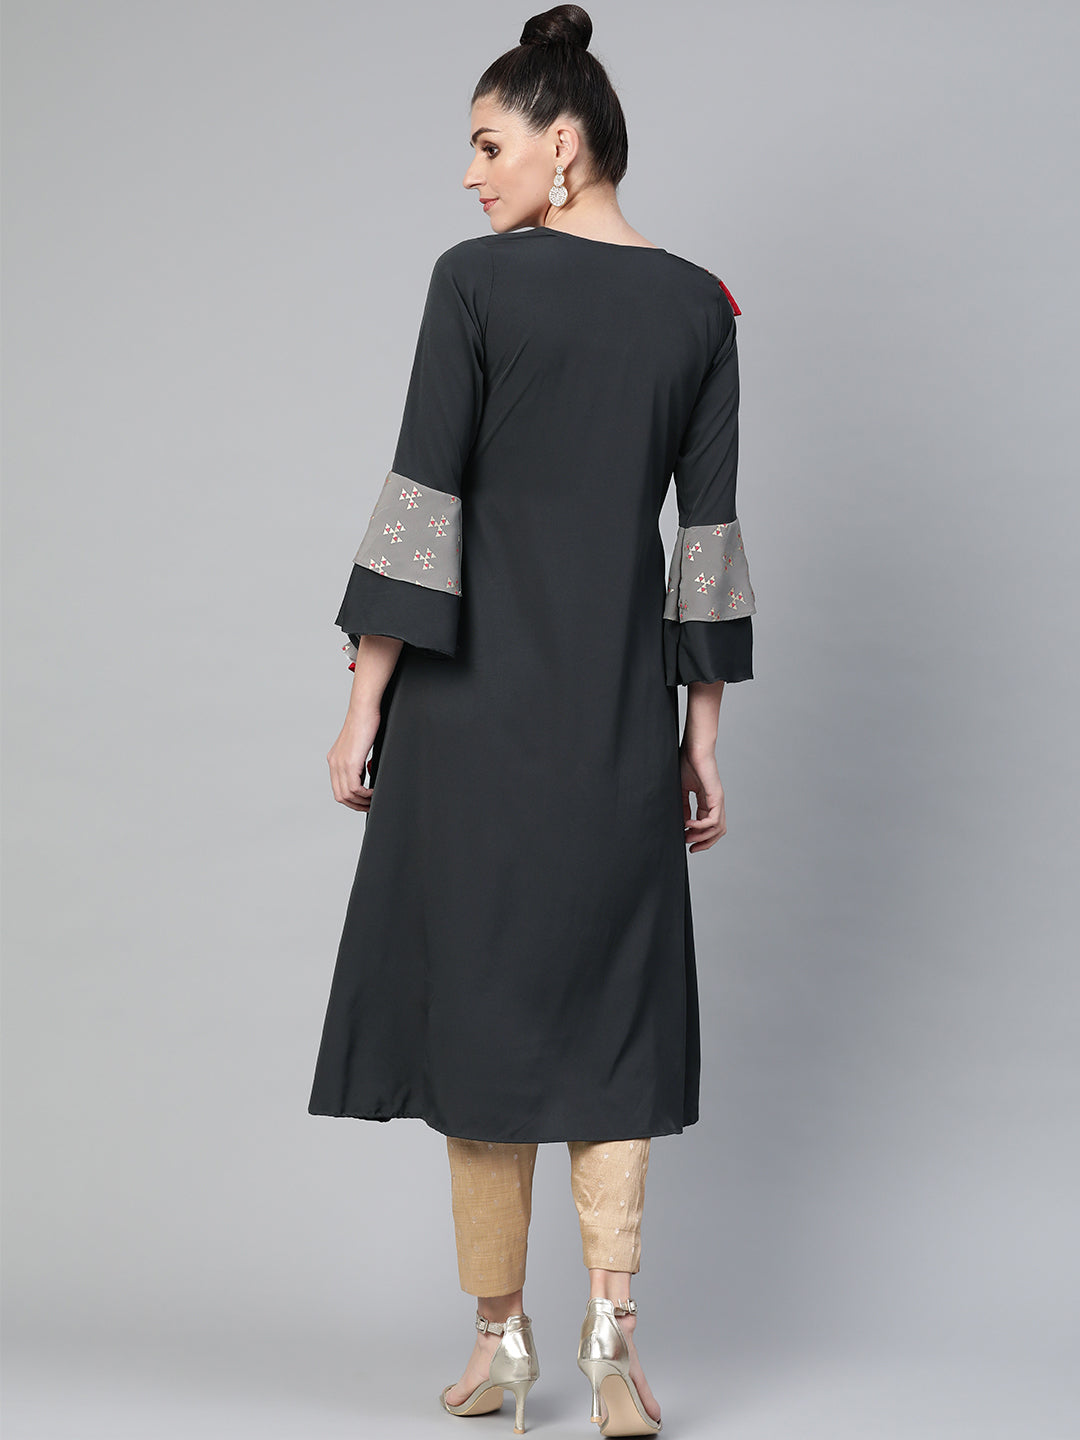 Women's Grey Angarkha Style Kurta From Ahalyaa - Ahalyaa